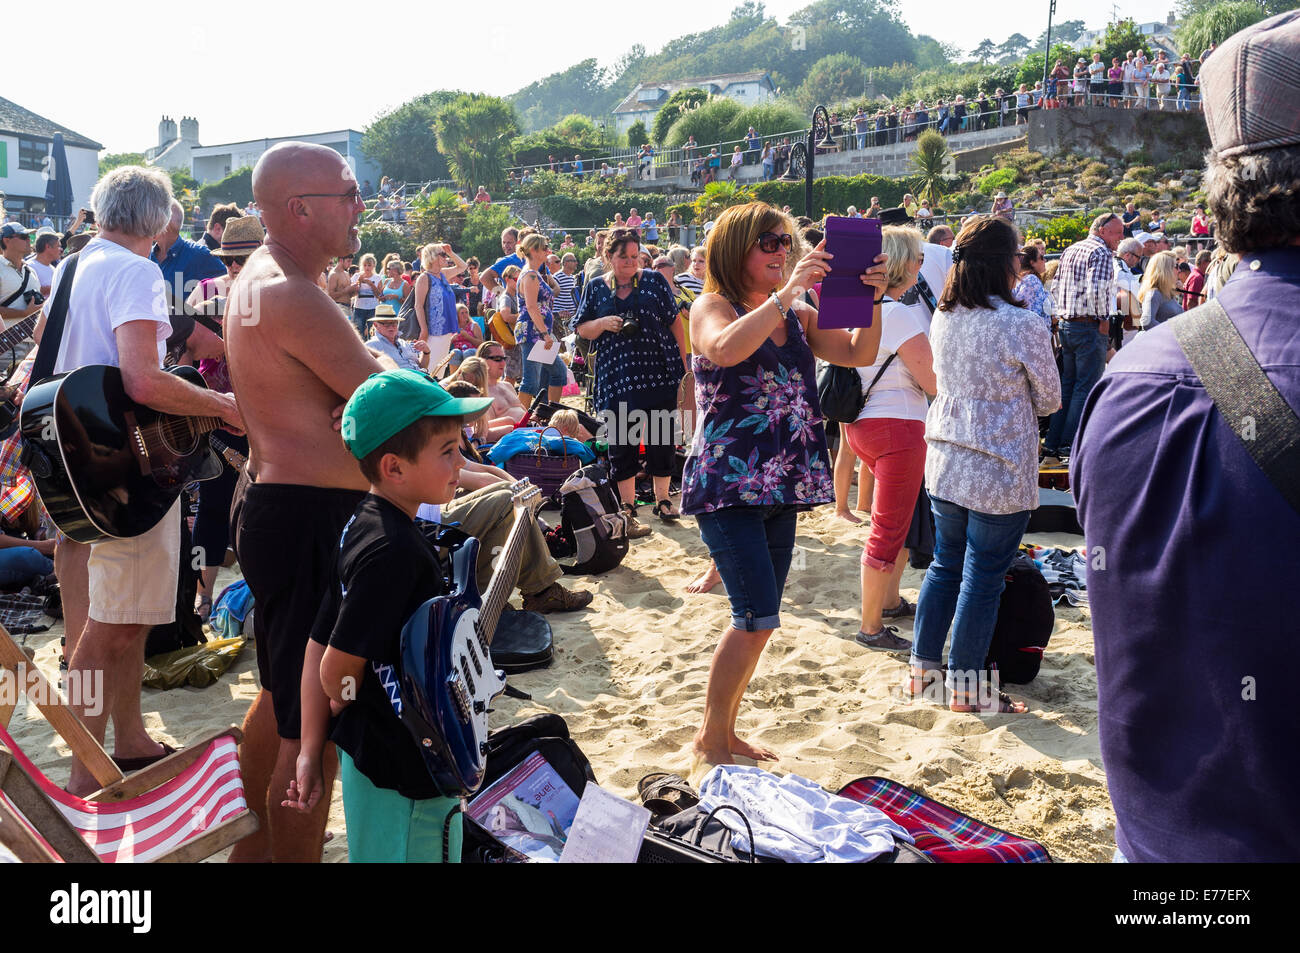 Le chitarre sulla spiaggia evento annuale è frequentato da migliaia di persone in questo anno di tentare un record mondiale di tutte le giocate in una sola volta Foto Stock